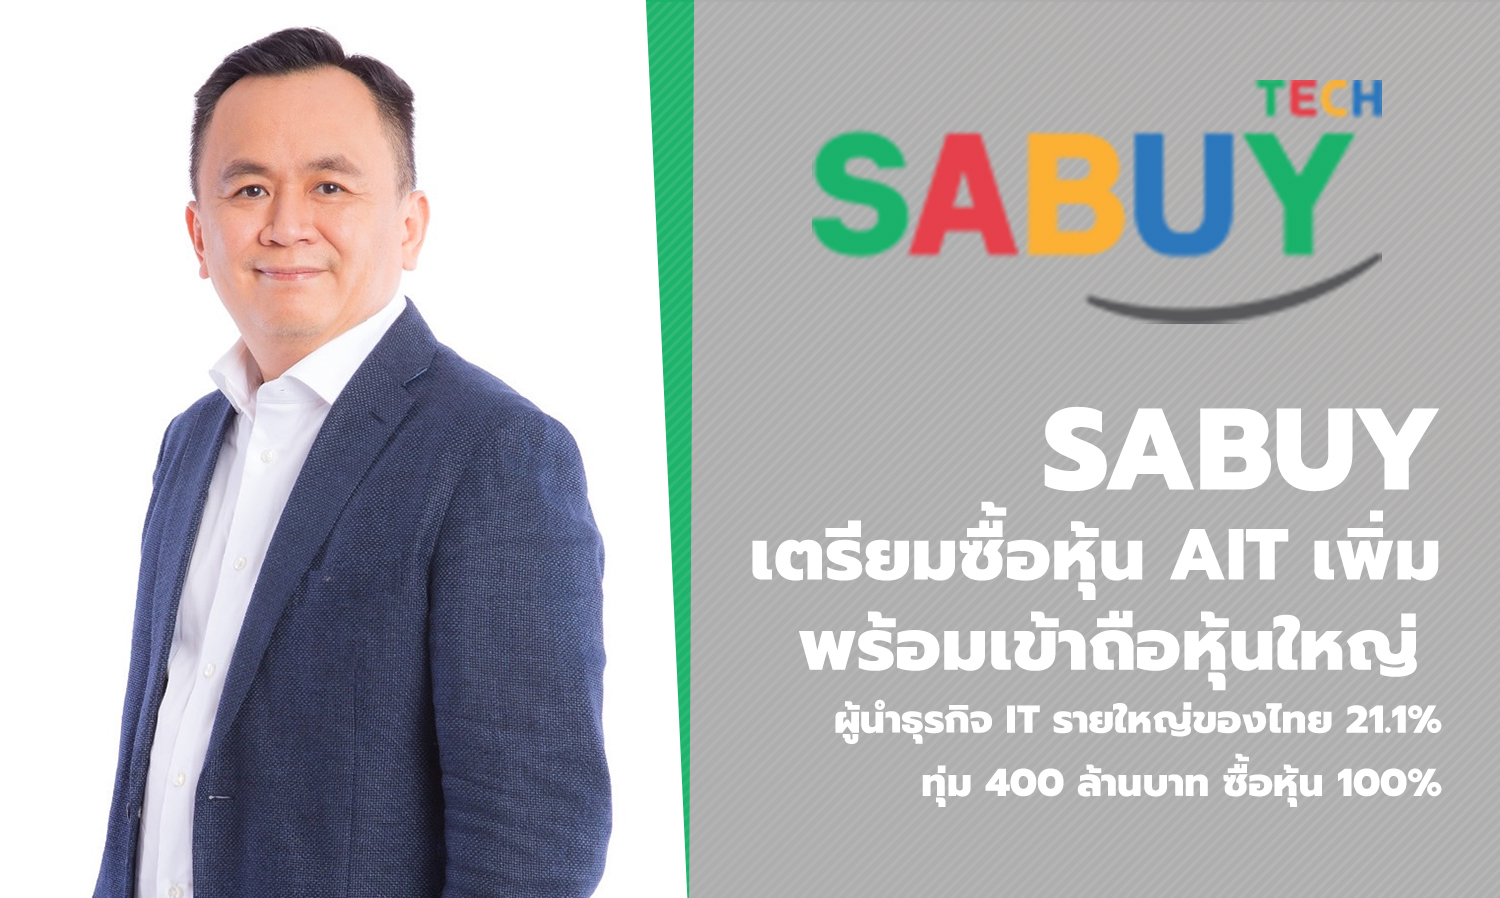 SABUY เตรียมซื้อหุ้น AIT เพิ่ม พร้อมเข้าถือหุ้นใหญ่ ผู้นำธุรกิจ IT รายใหญ่ของไทย 21.1% ทุ่ม 400 ล้านบาท ซื้อหุ้น 100% 